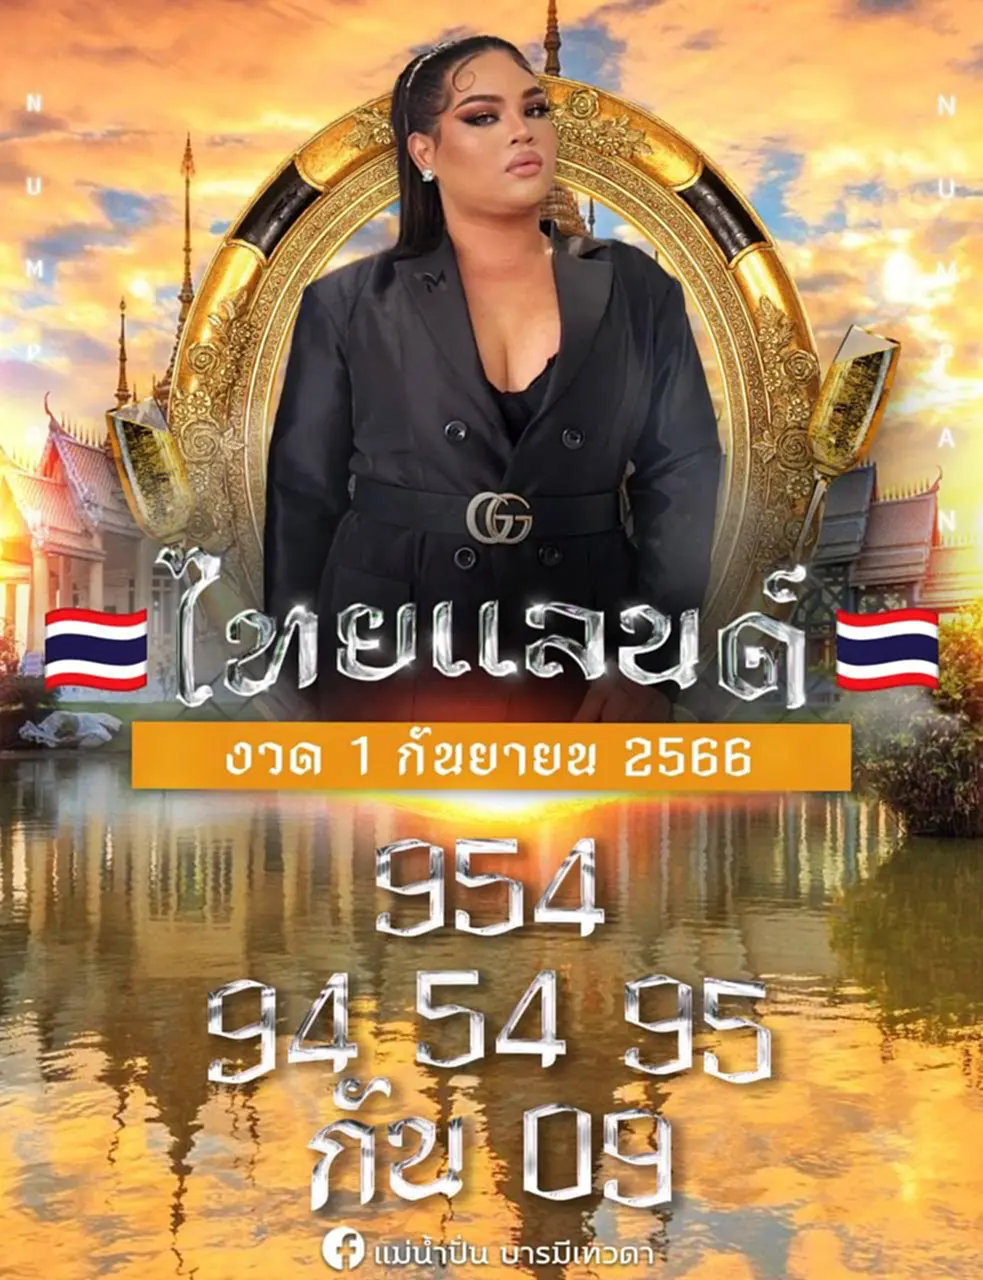 หวย แม่น้ำปั่น 1 9 66 แนวทางหวยรัฐบาลไทย แม่น้ำปั่น บารมีเทวดา